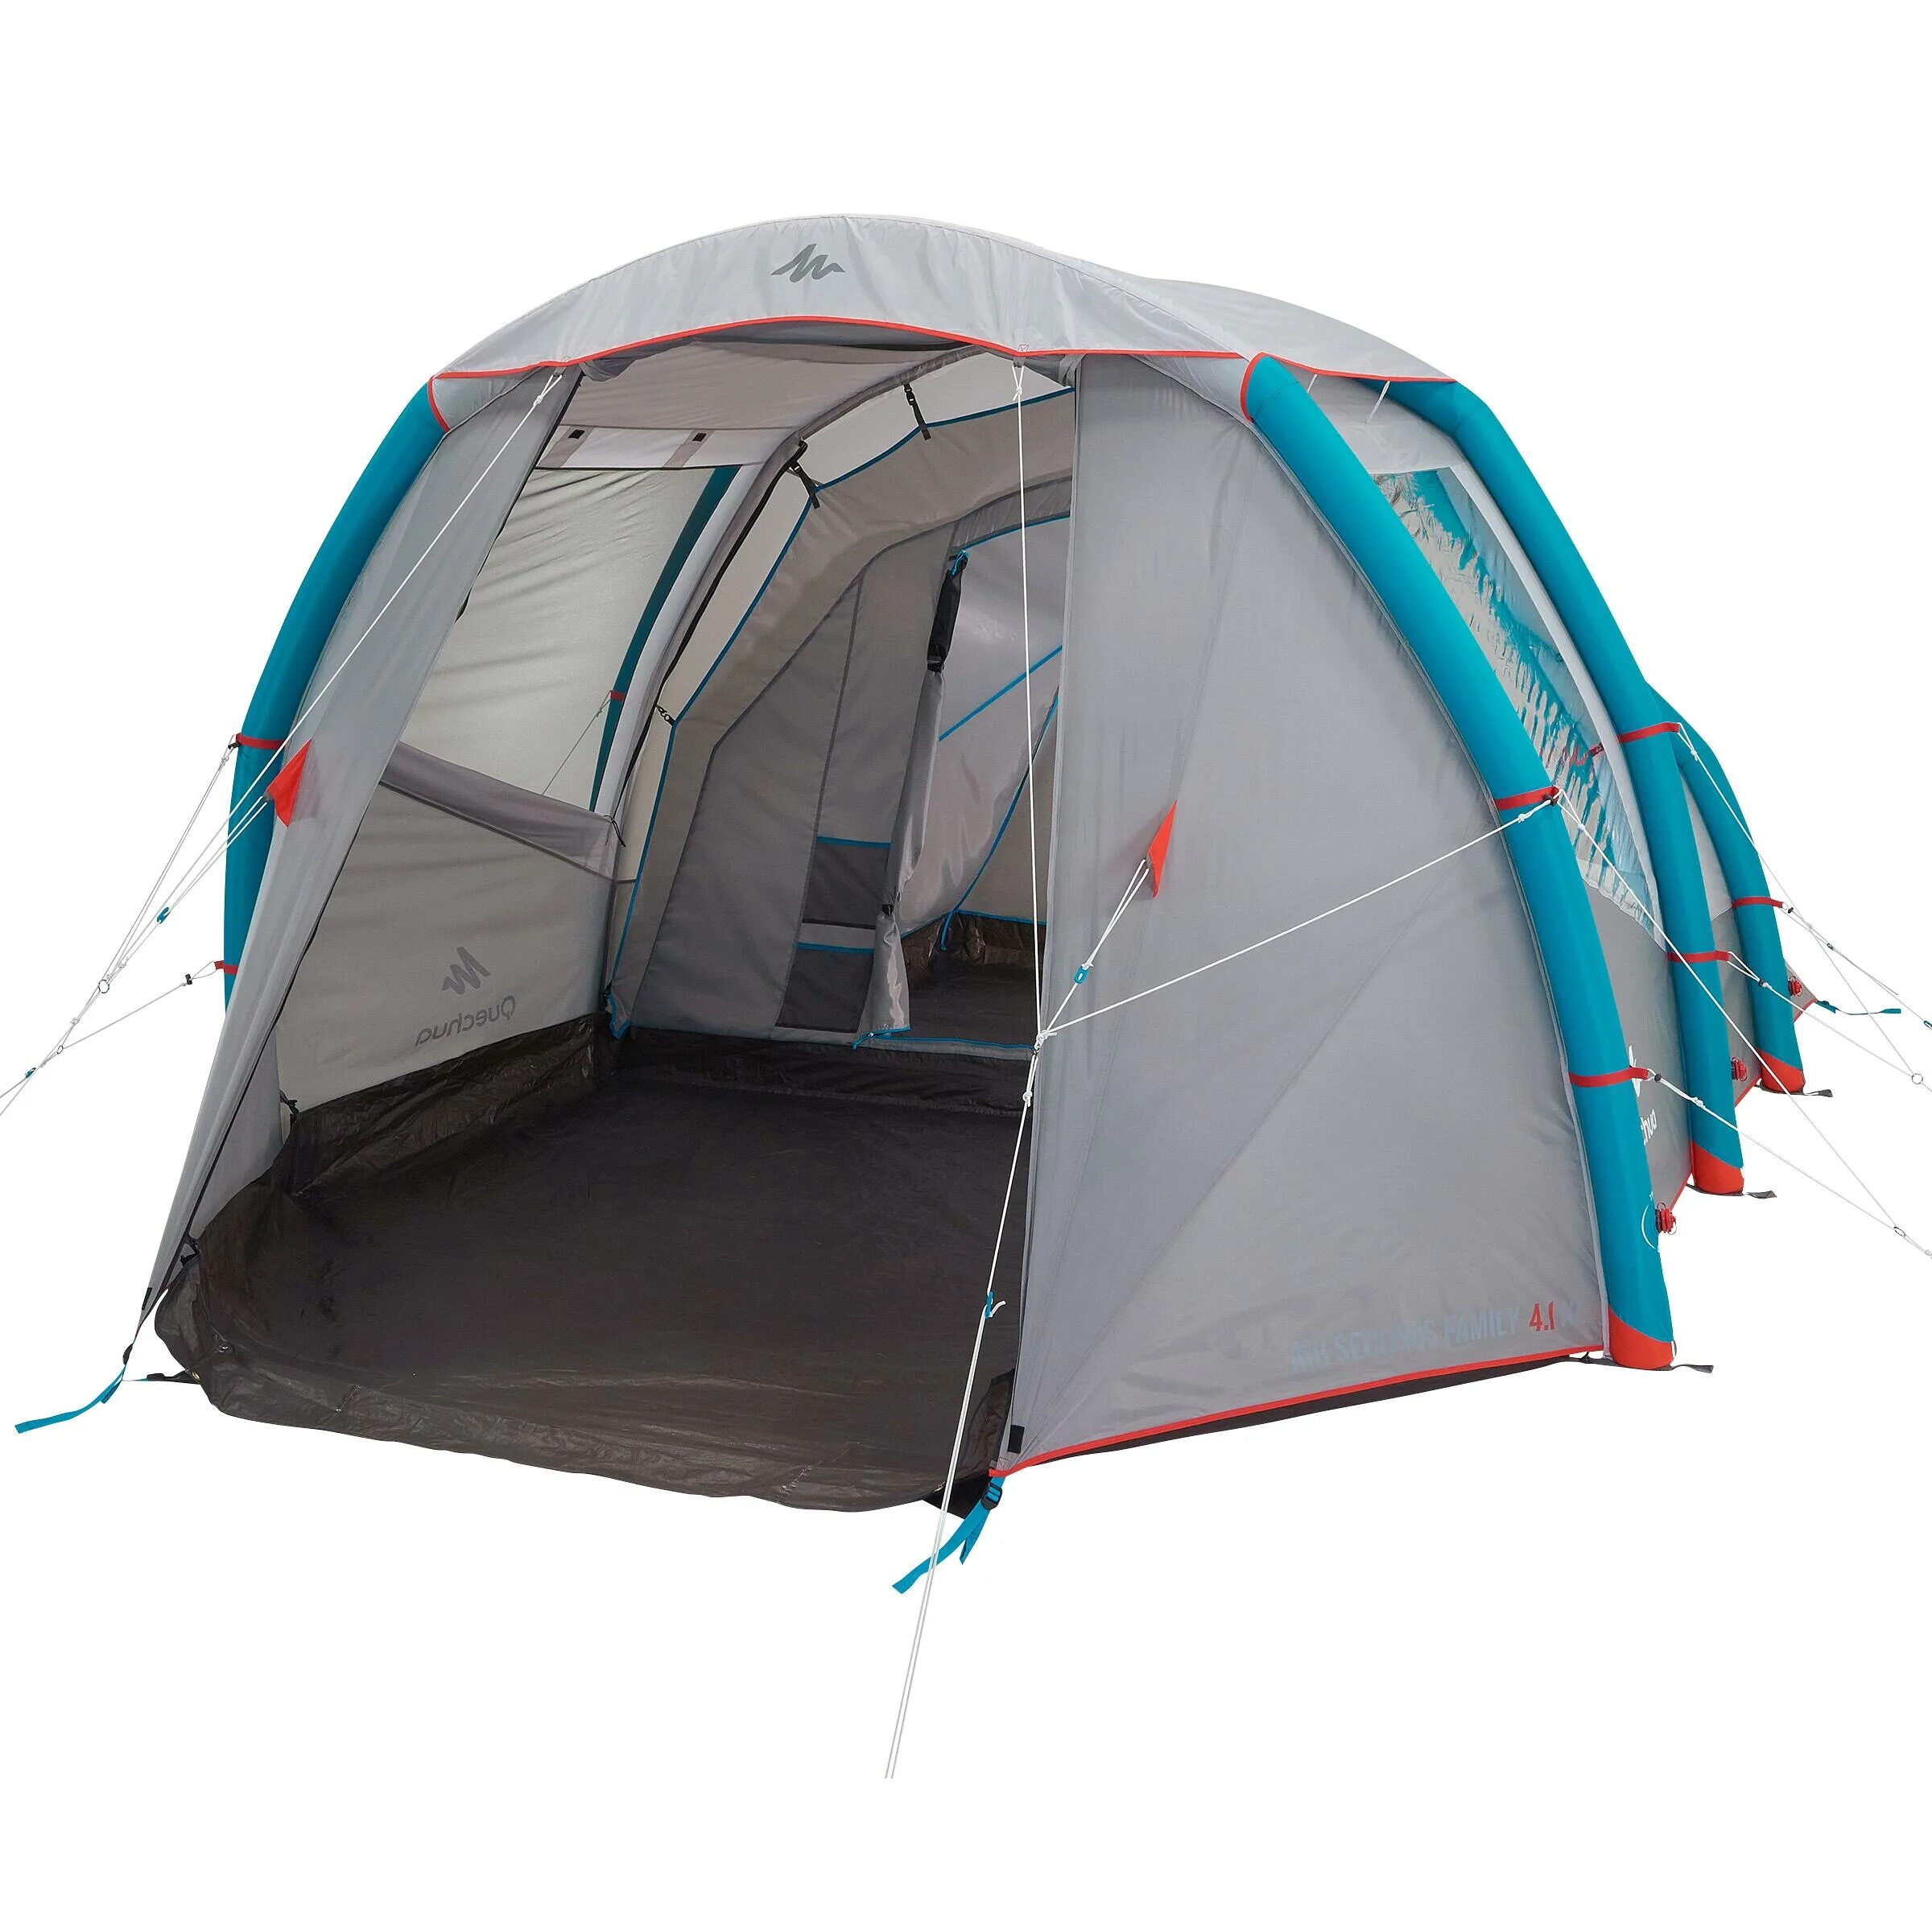 Купить палатку местную на озон. Палатка Quechua Air seconds 4.1 XL. Палатка Quechua Air seconds Family 4. Палатка надувная для кемпинга 4-местная 1-комнатная Air seconds 4.1 Quechua. Палатка Quechua seconds Family 4.1.